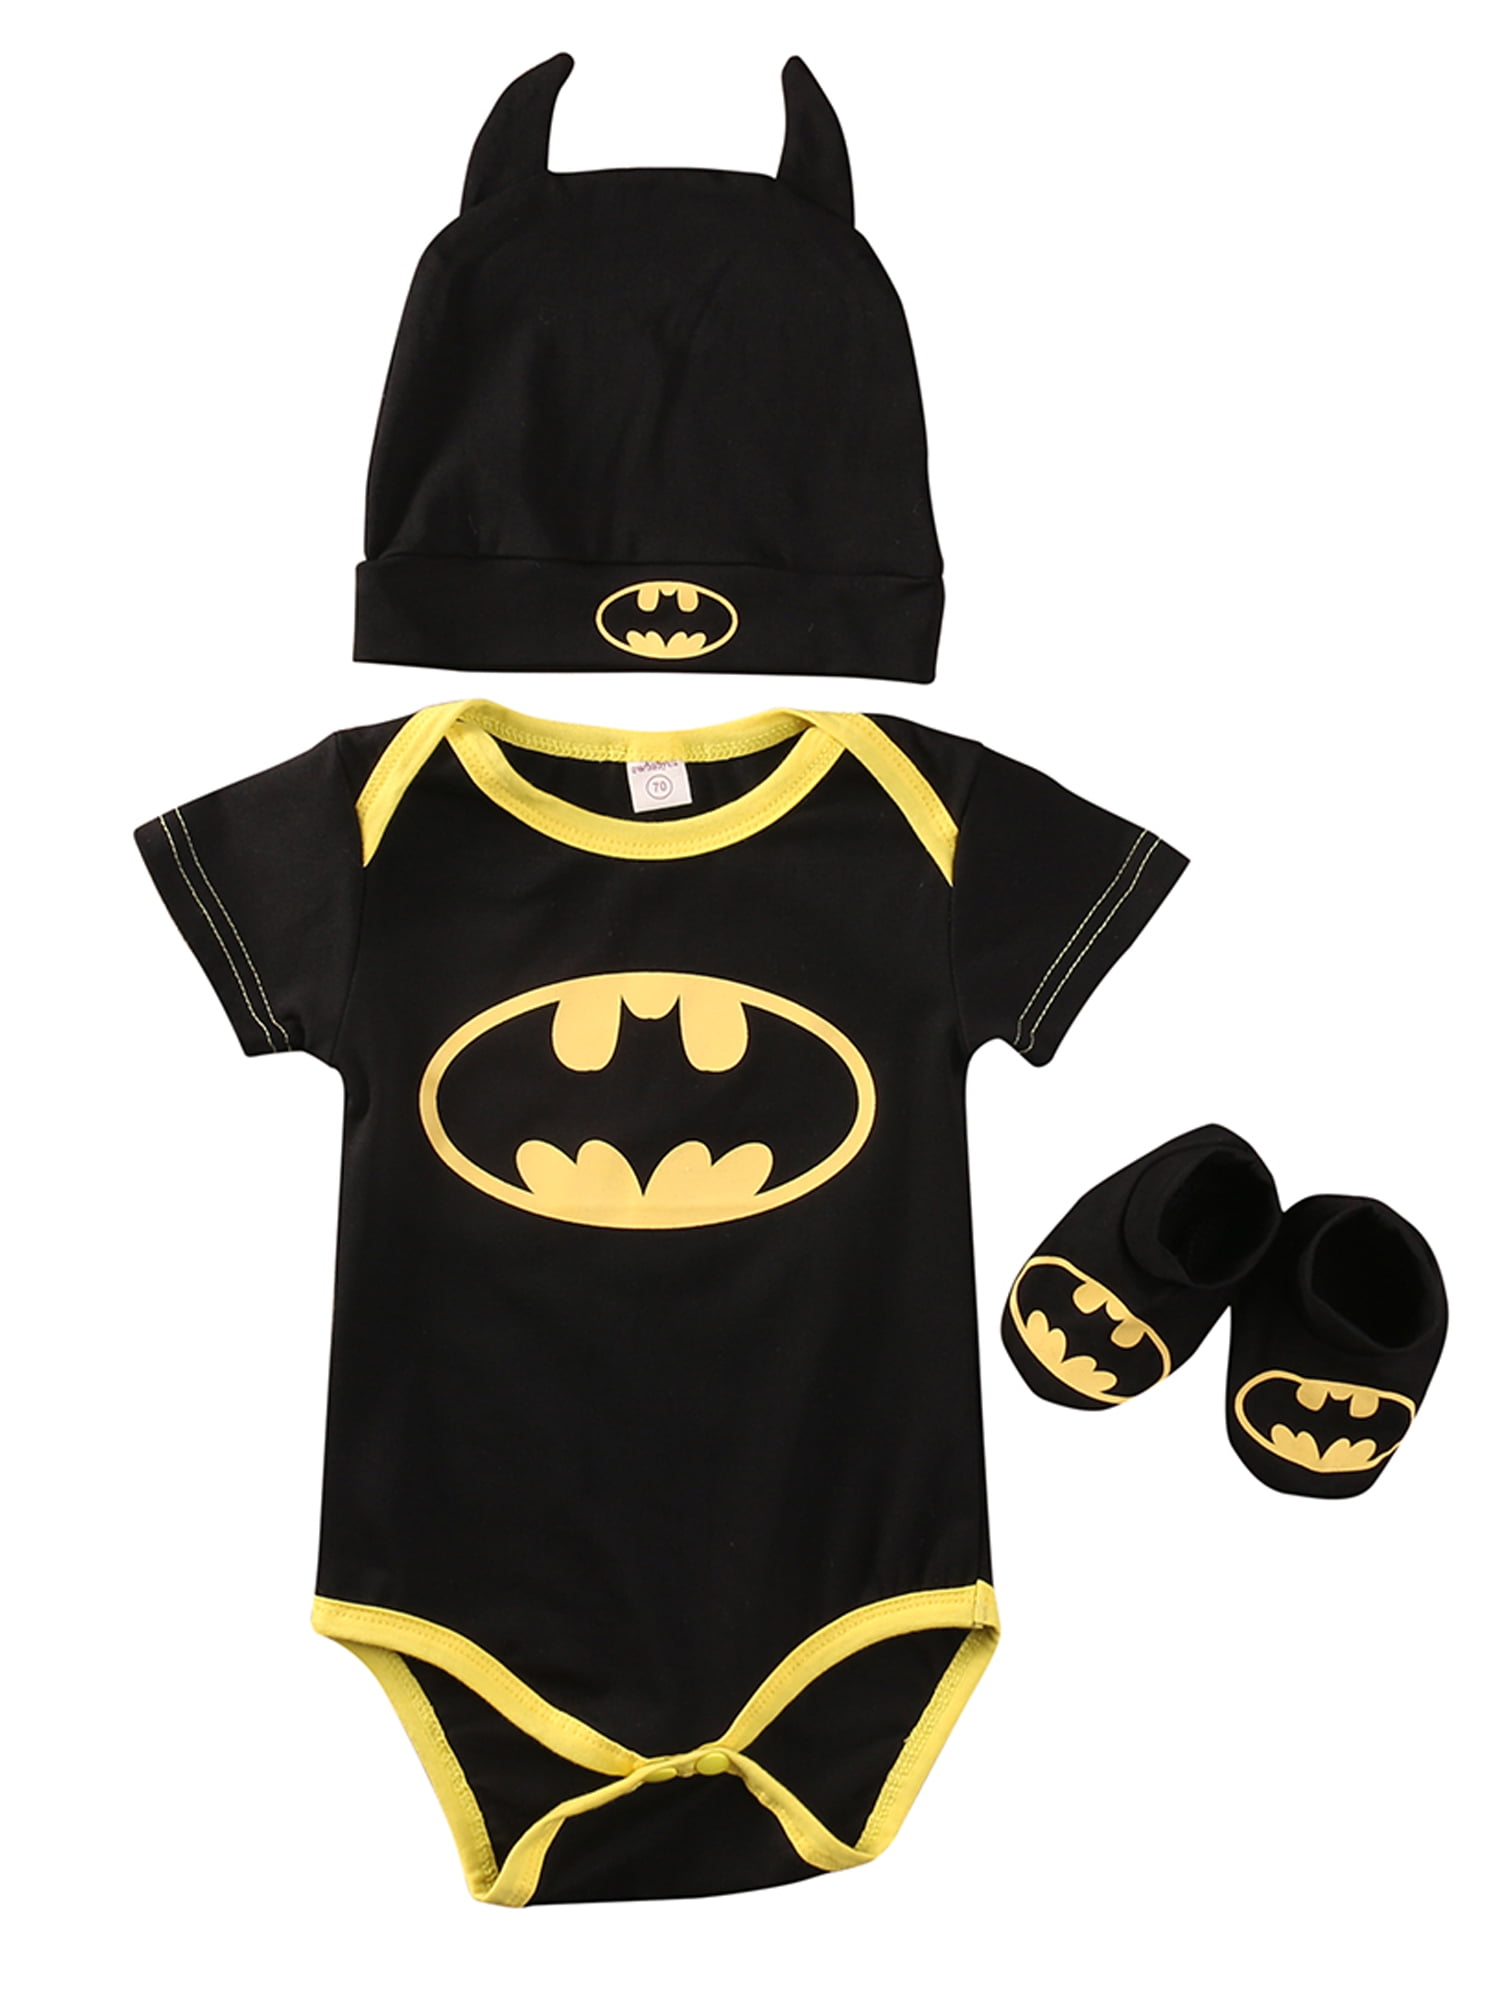 Newborn Baby Boy Batman Superman Romper Bodysuit Jumpsuit Outfit Costume Clothes 